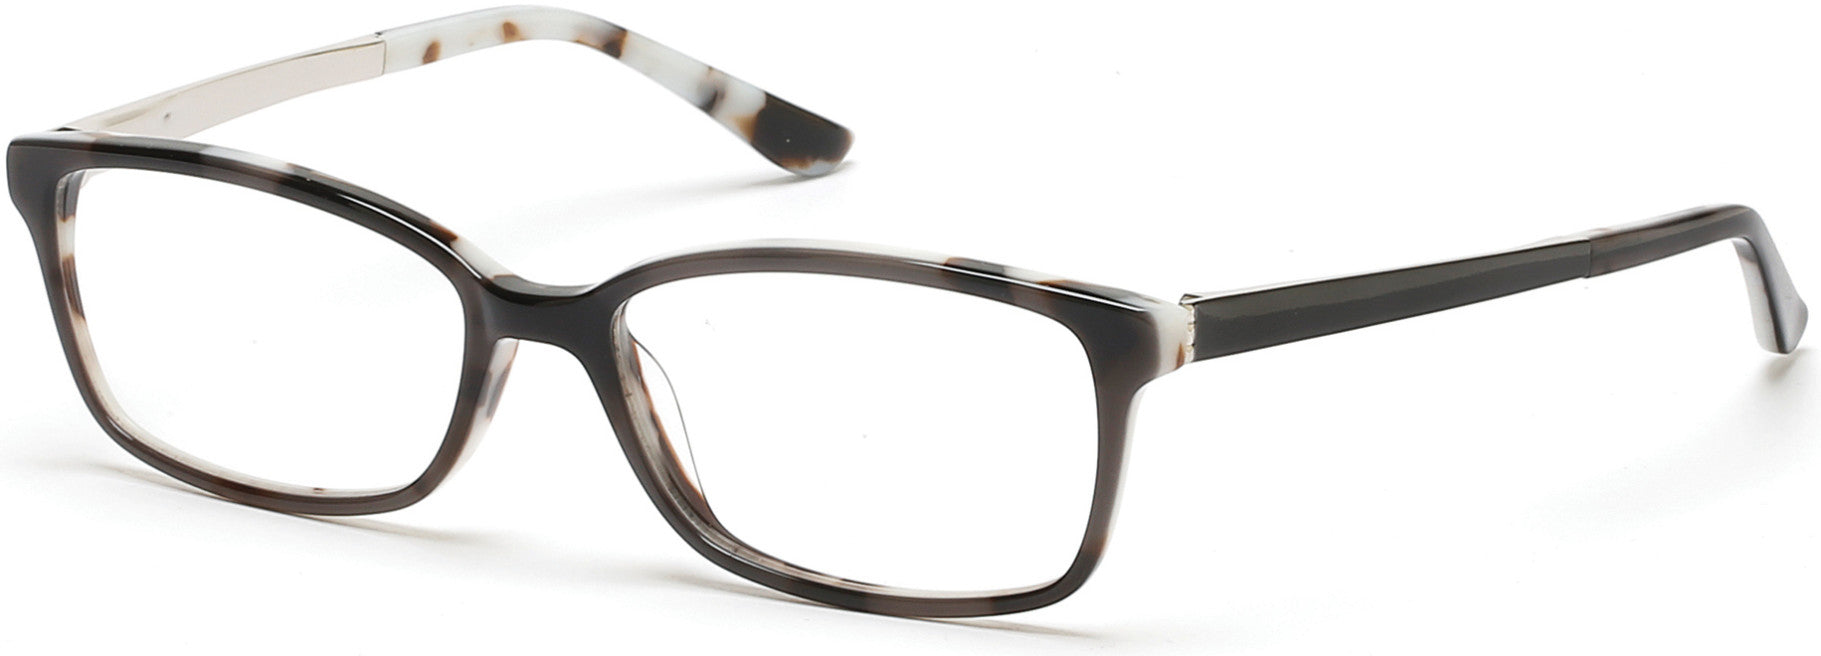 Marcolin MA5000 Eyeglasses 005-005 - Black